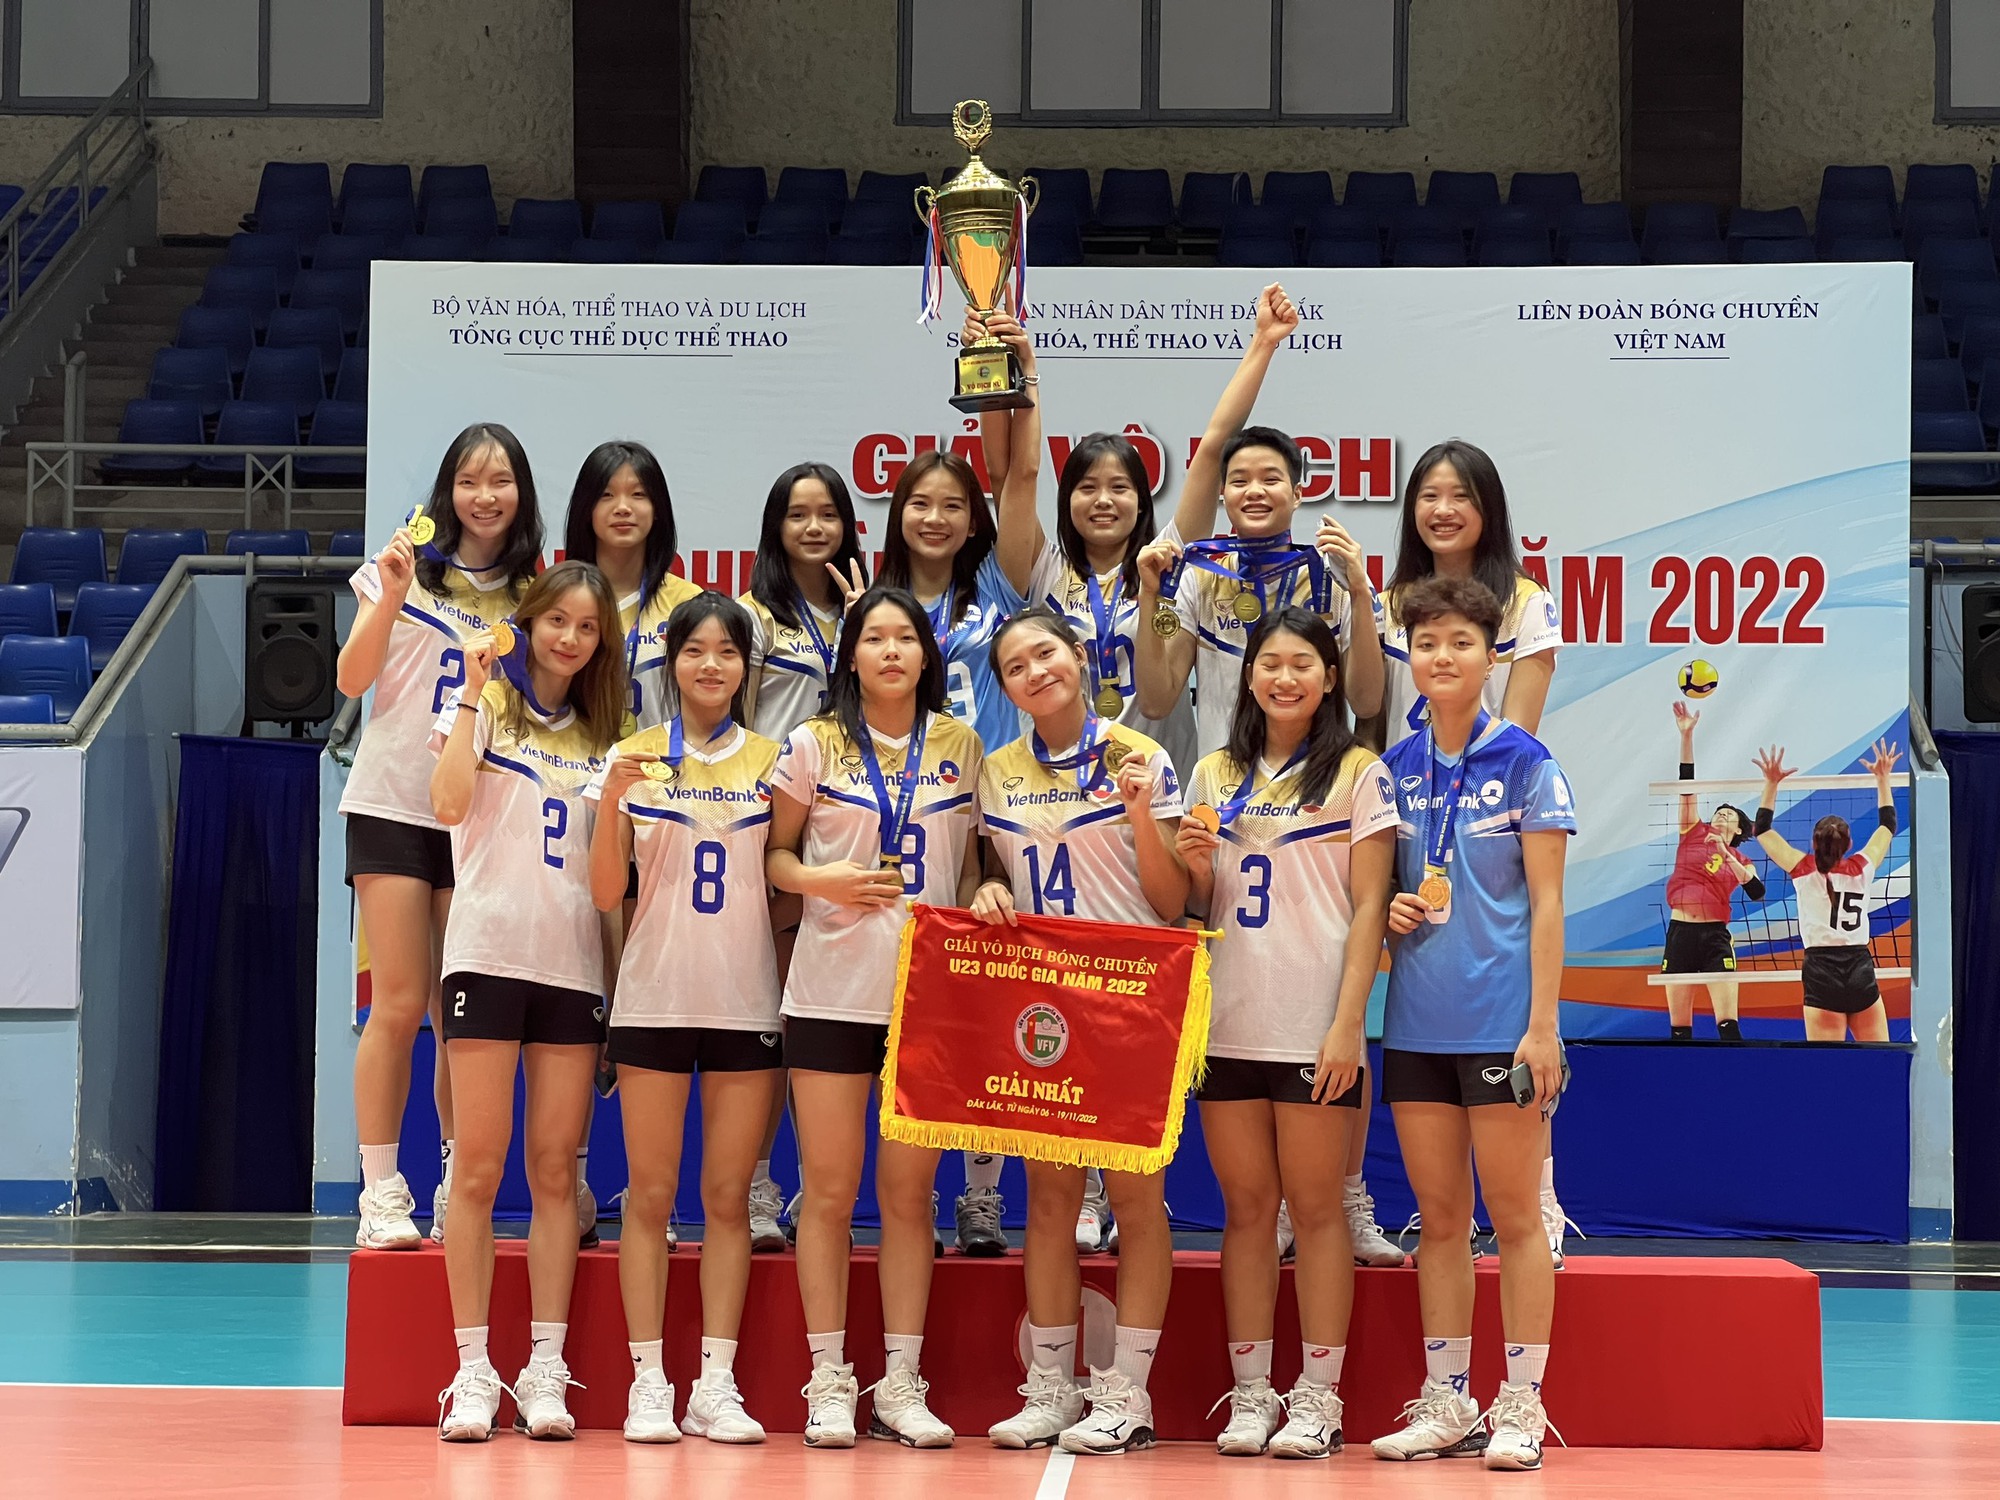 Đội Bóng chuyền nữ VietinBank xuất sắc bảo vệ thành công ngôi vô địch Giải vô địch Bóng chuyền U23 Quốc gia 2022  - Ảnh 2.